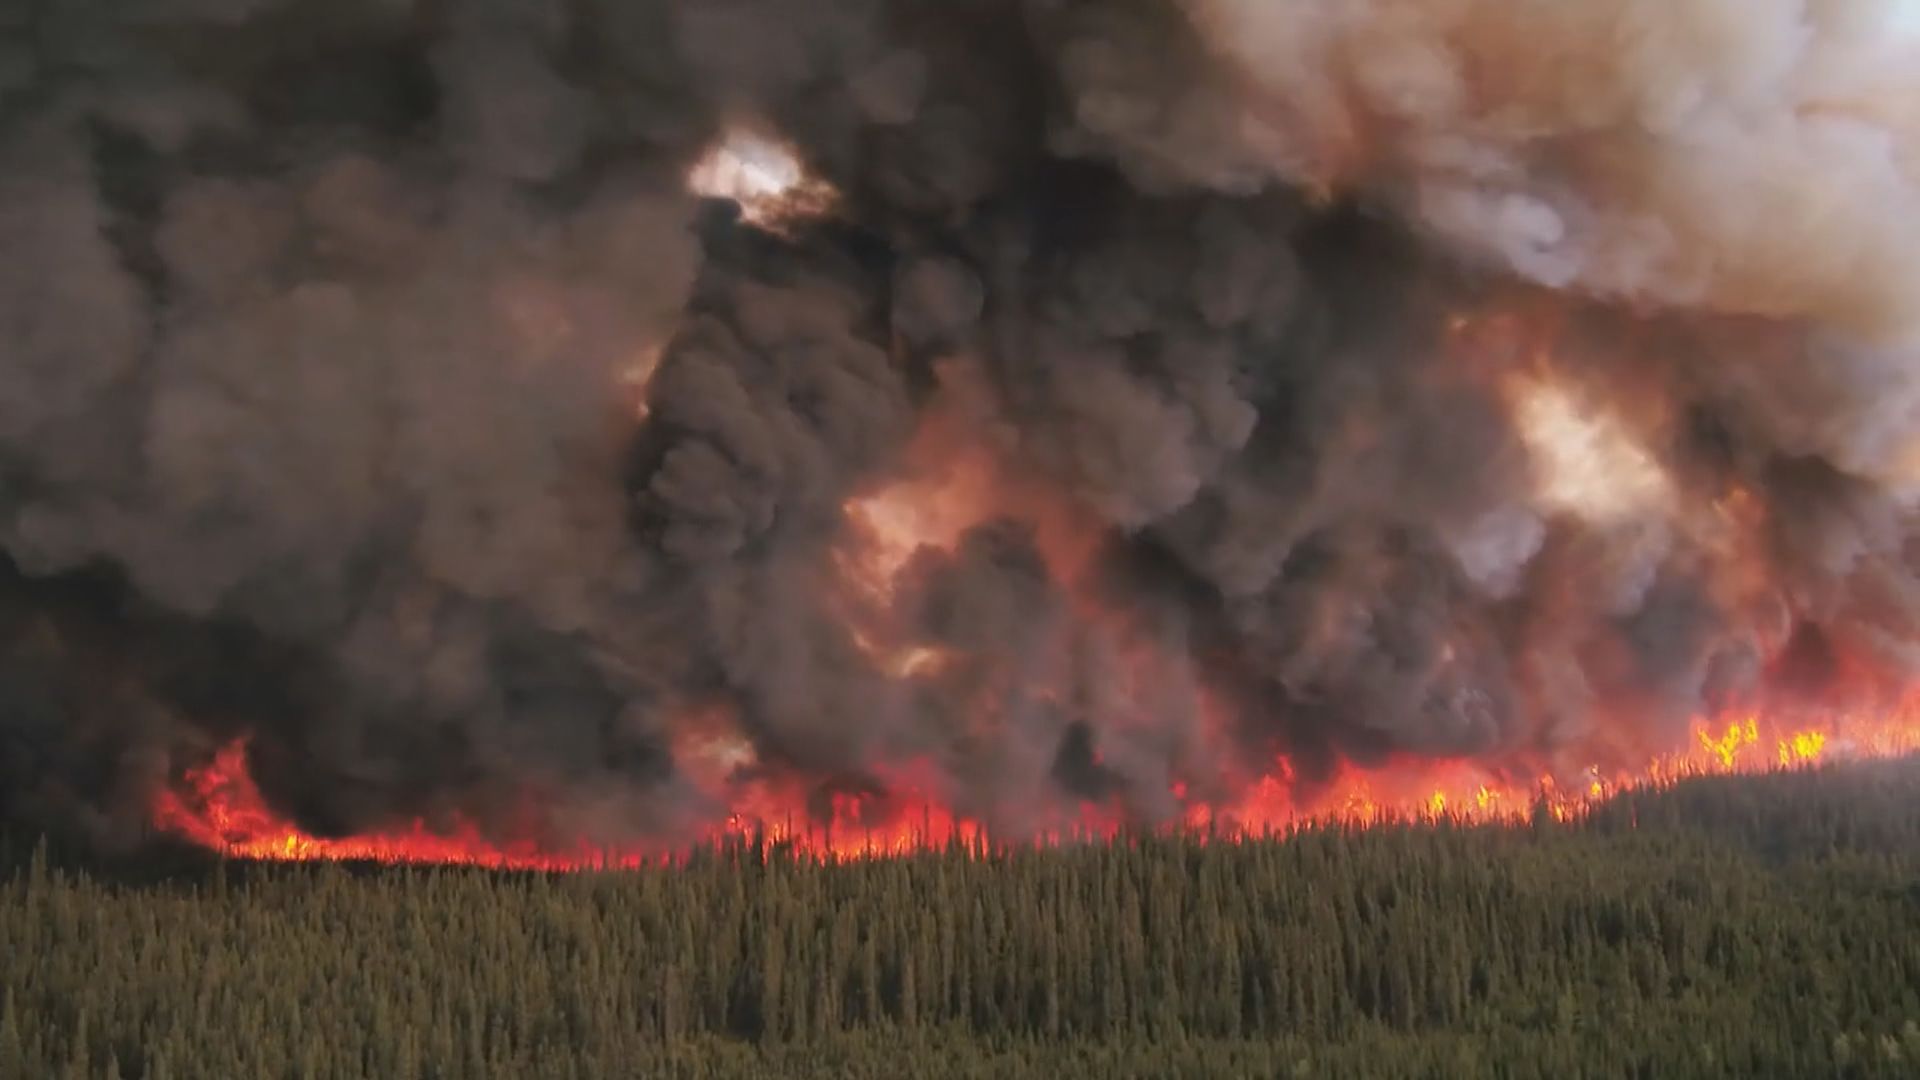 加拿大山火產生的煙霧令北美多地空氣質素嚴重污染 